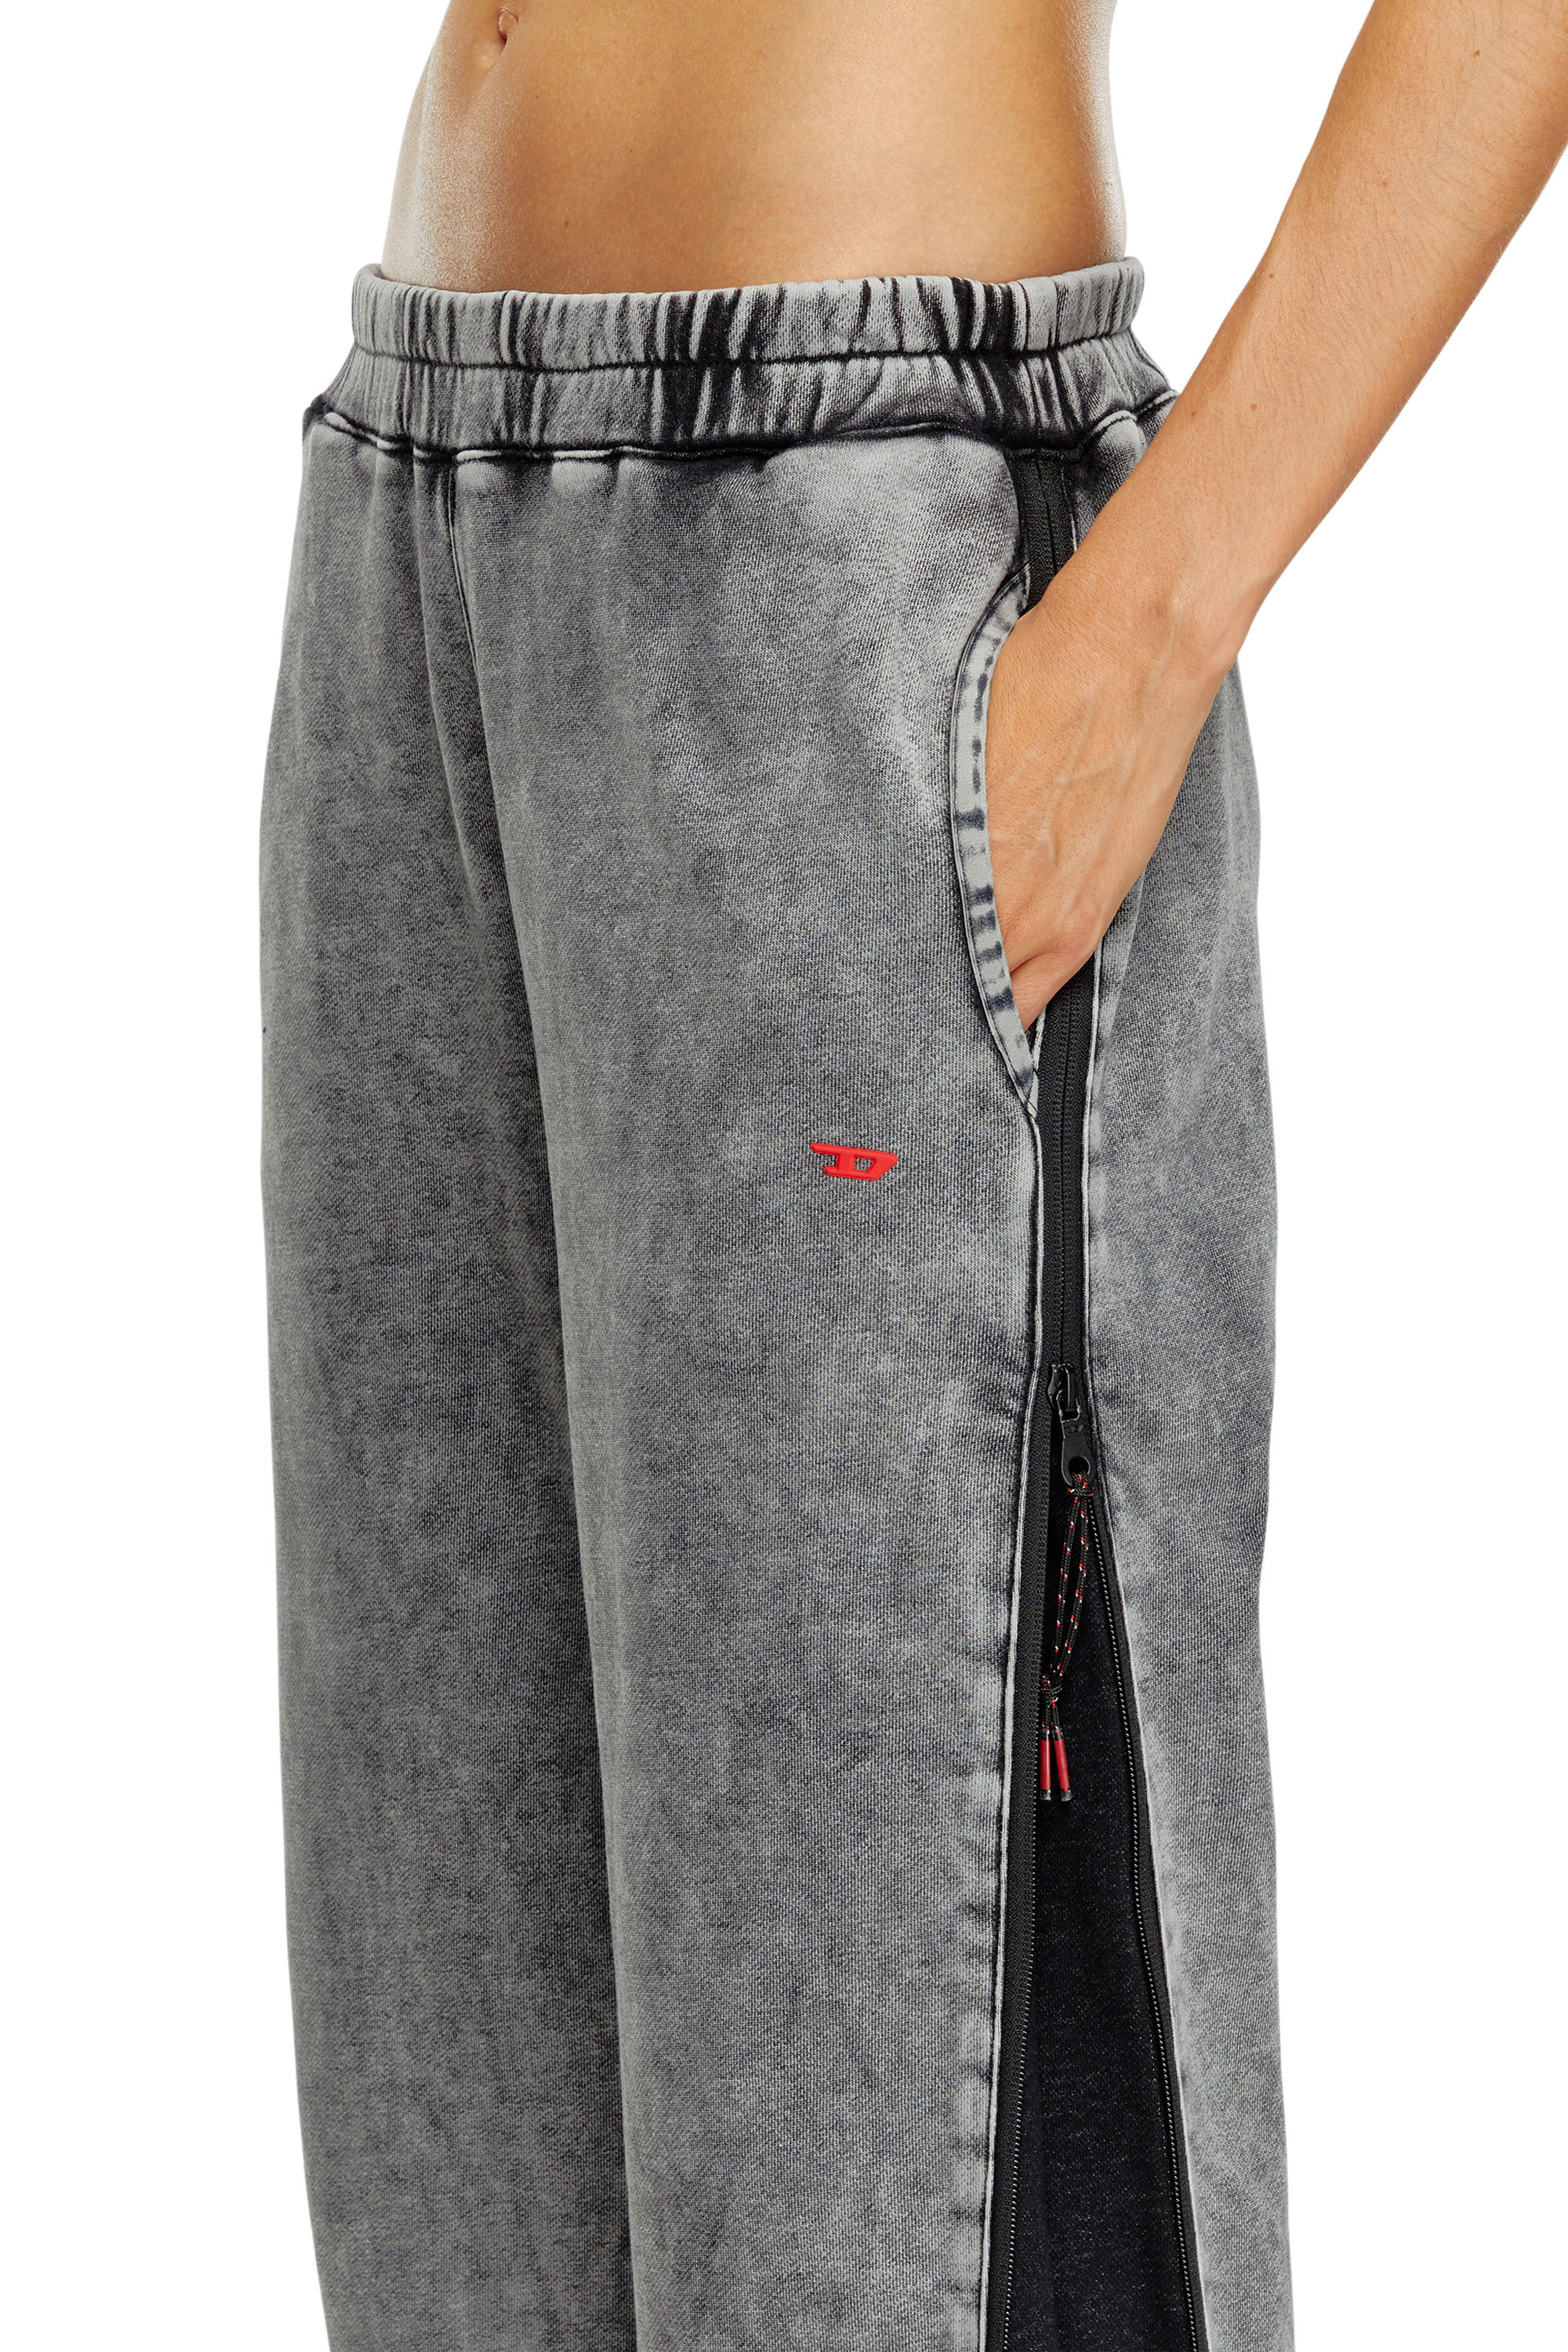 Diesel - AWSB-DELANEY-HT51, Mujer Pantalones deportivos desteñidos con laterales con cremallera in Gris - Image 3